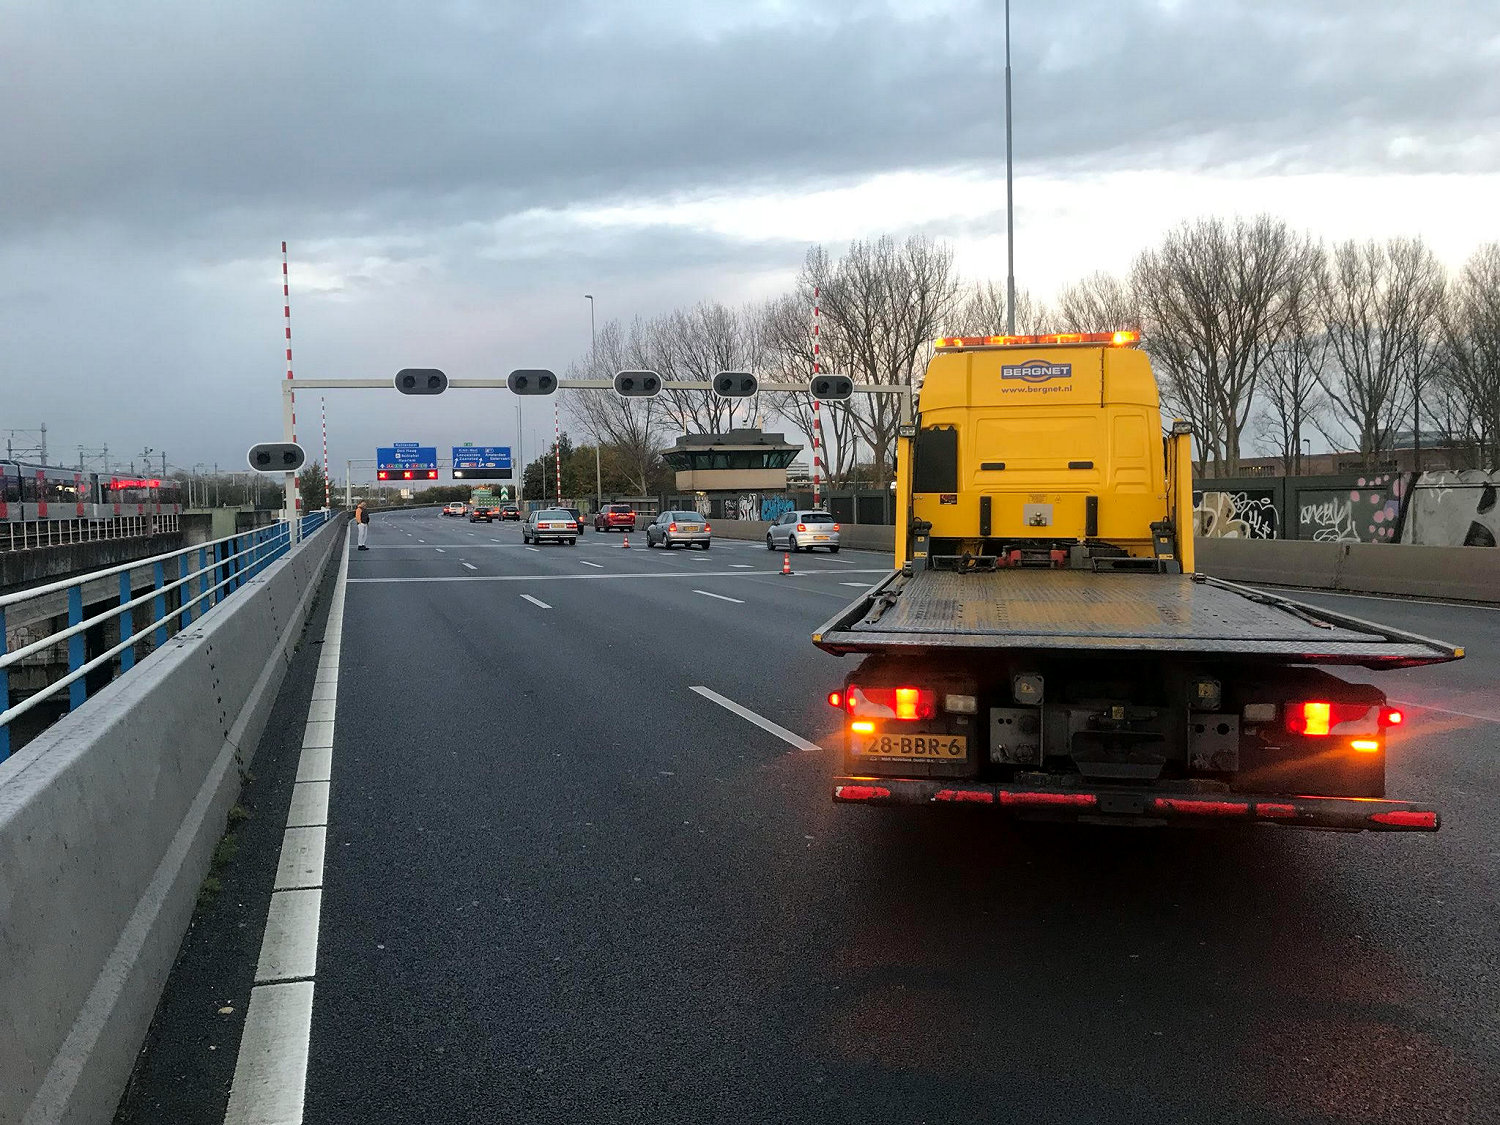 Bergnet securing a broken-down vehicle on the A10 motorway at Nieuwe Meer, on 13 November 2017 (Photograph: Sander Poort)